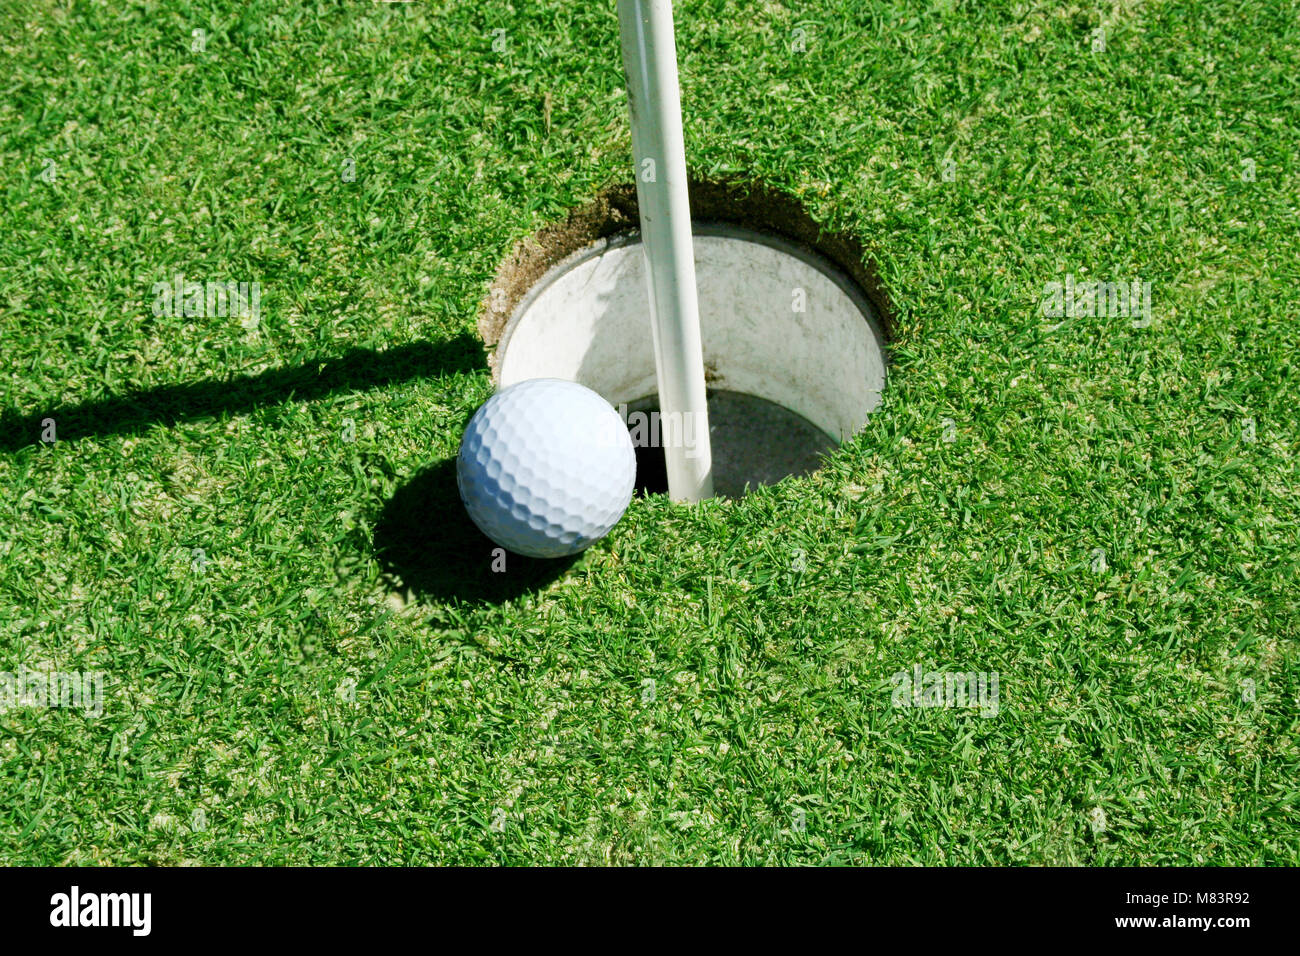 A Golf Ball on green near hole with flag pole Stock Photo